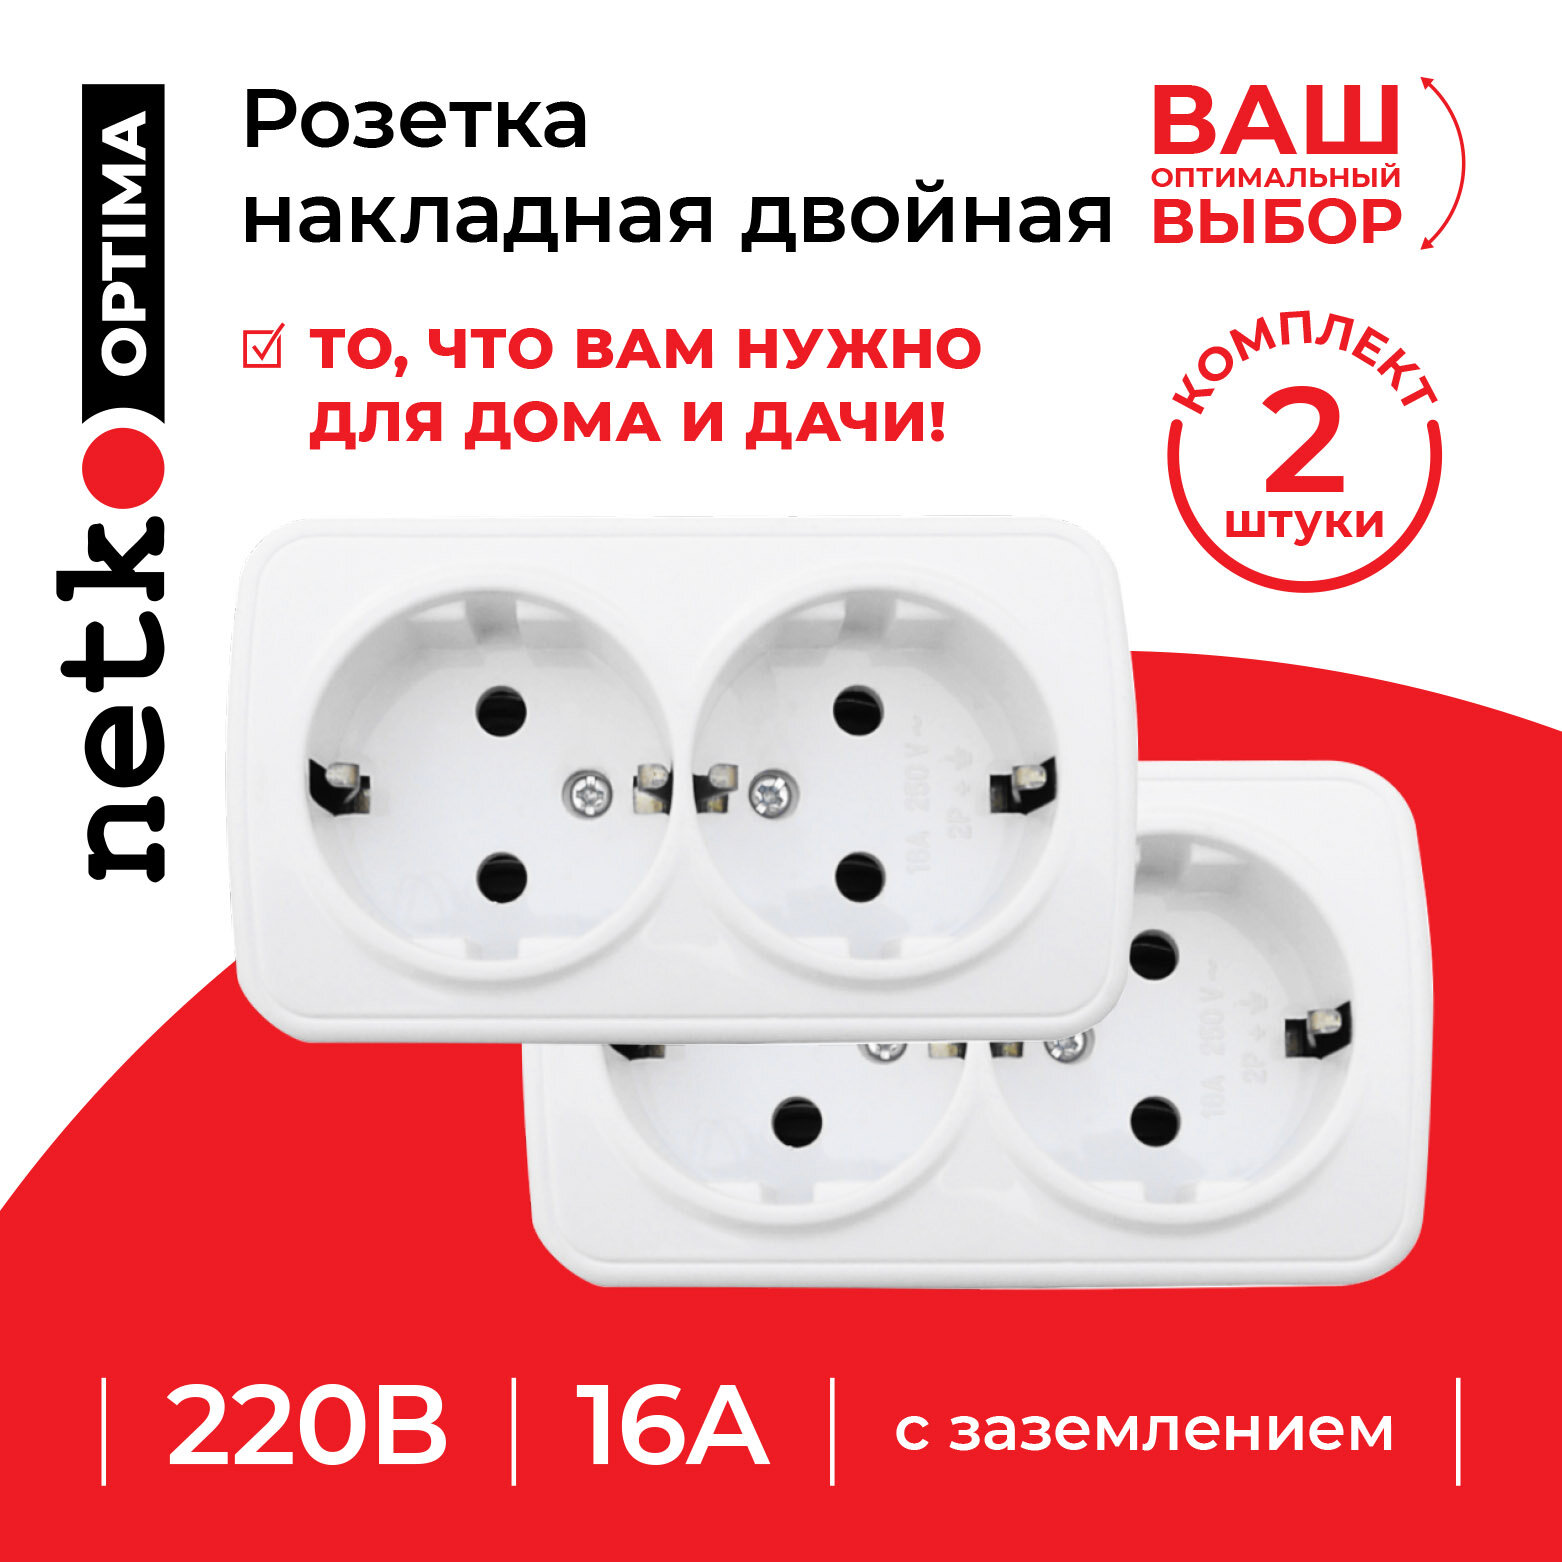 Розетка NETKO Optima Electric накладная двойная с заземлением, 16A, пластик, IP20, белый 2 шт